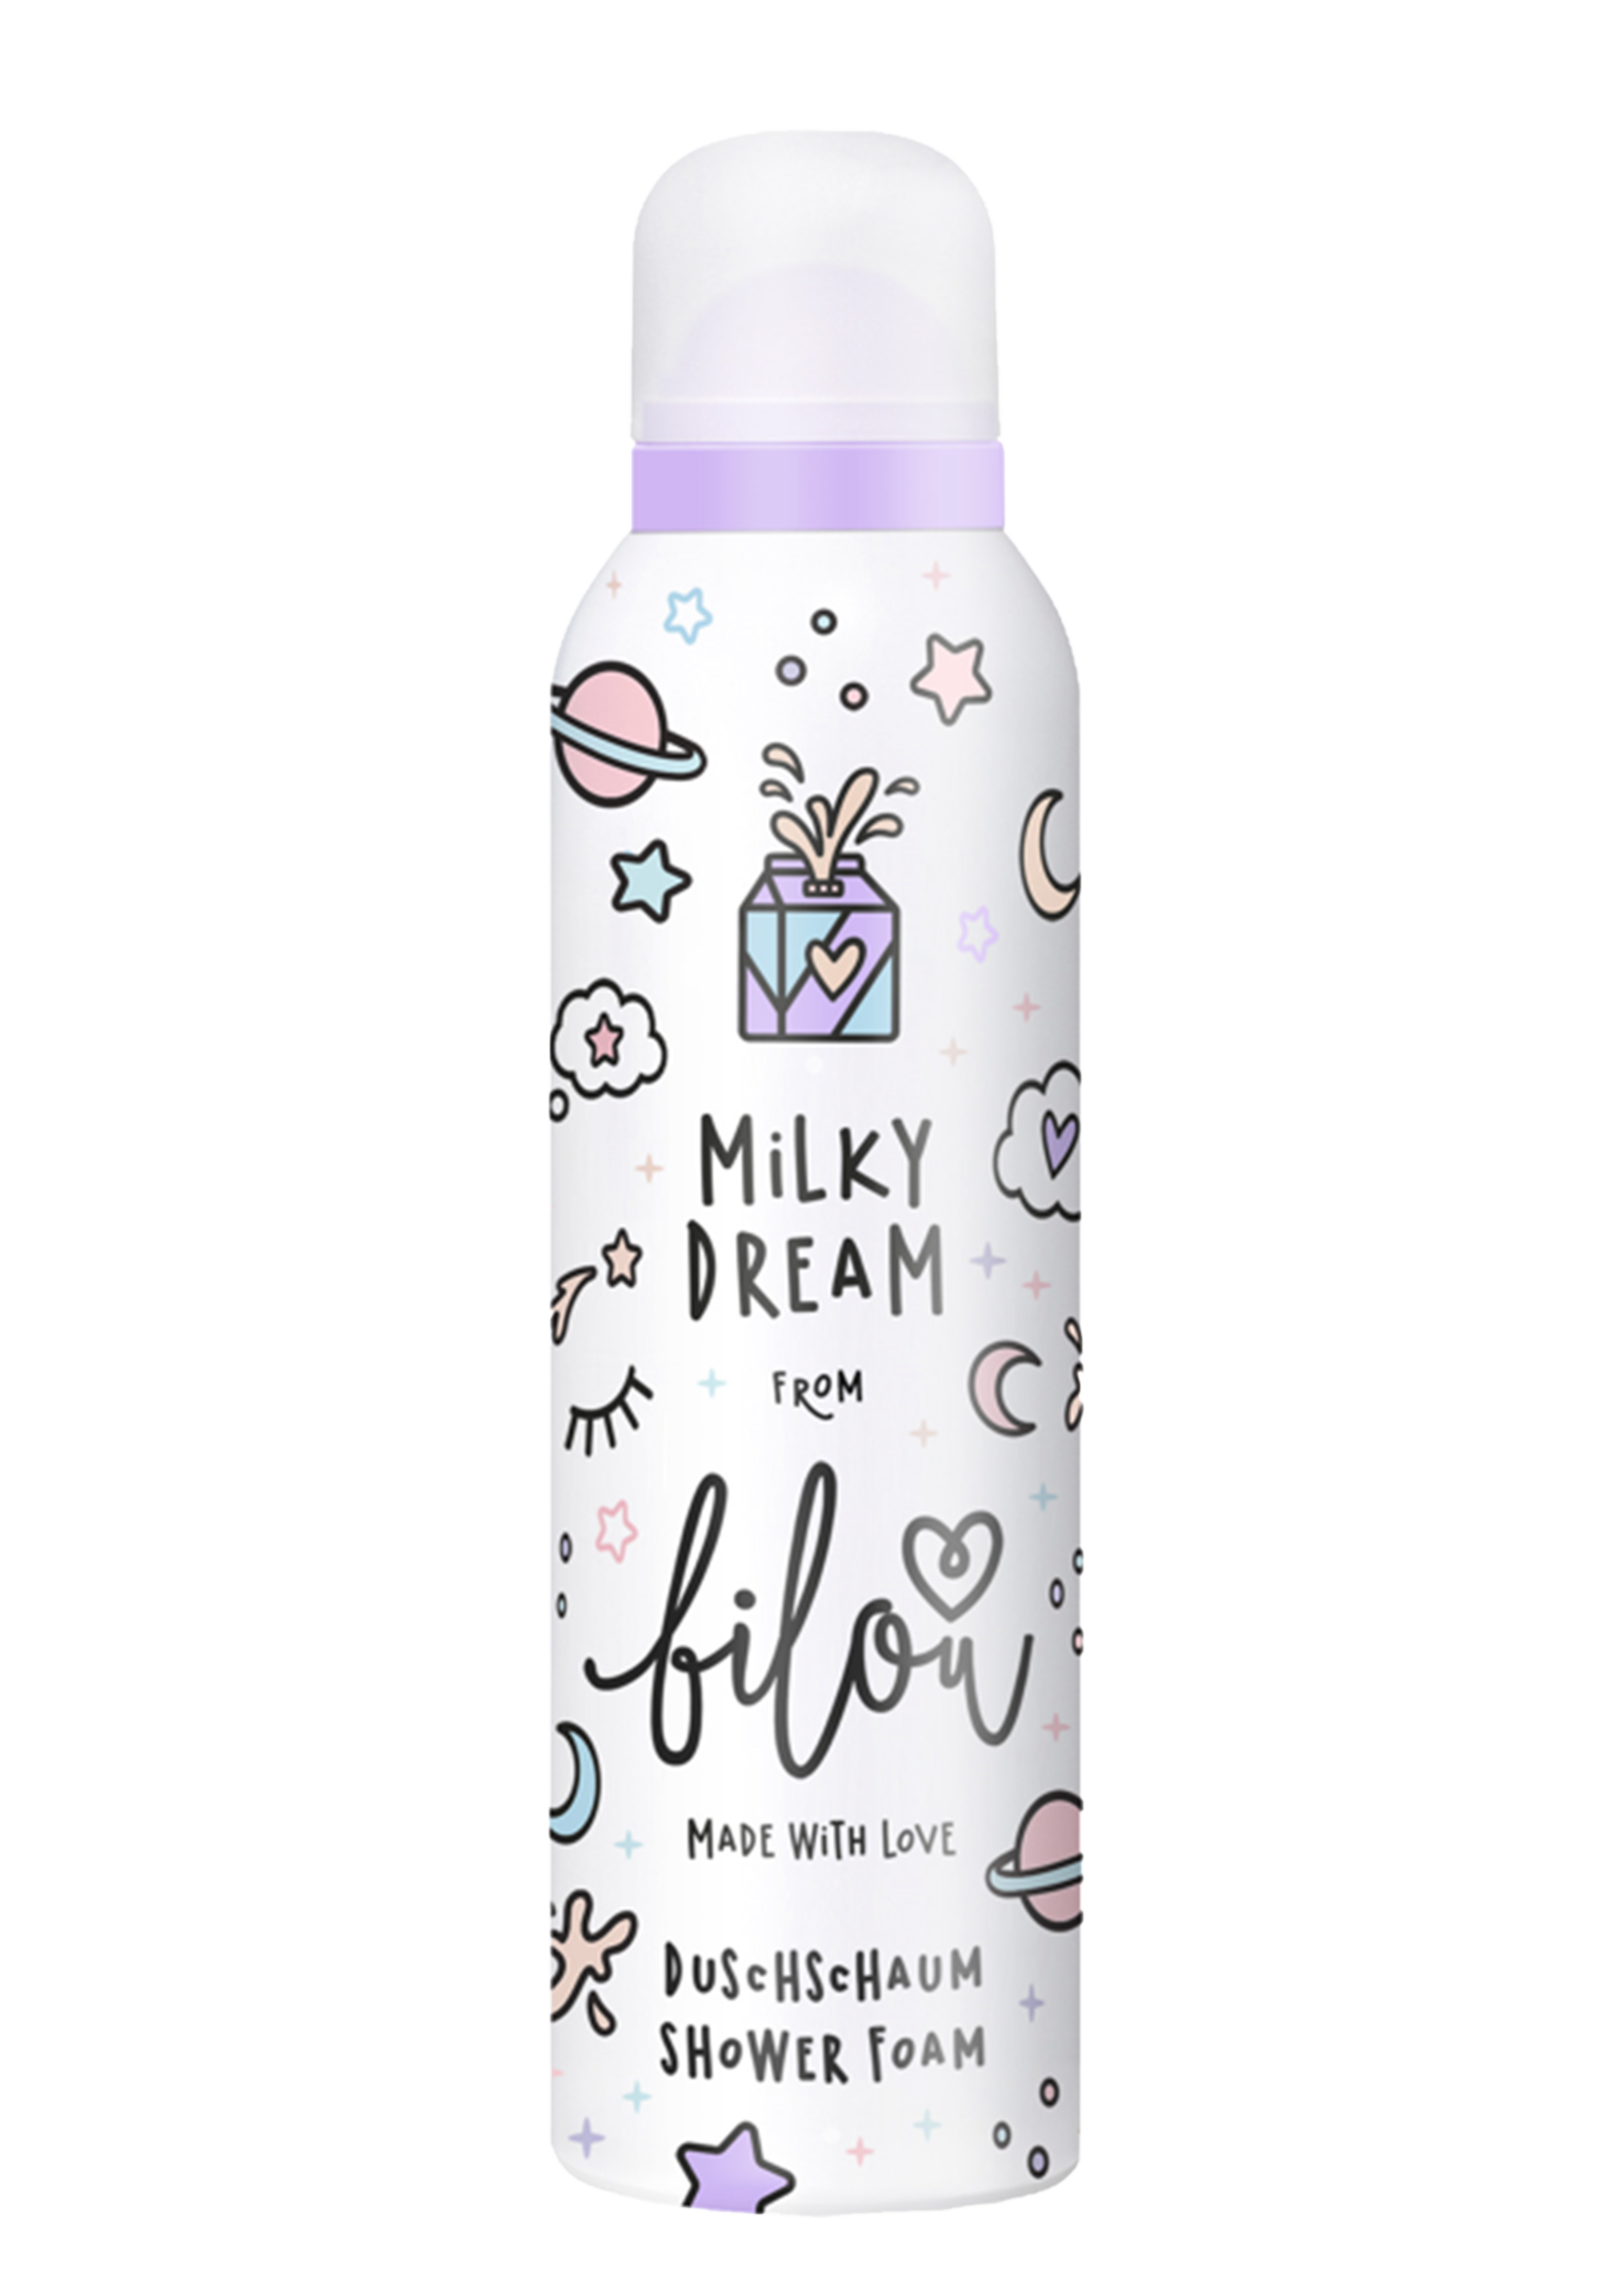 Bilou Showerfoam Milky Dream